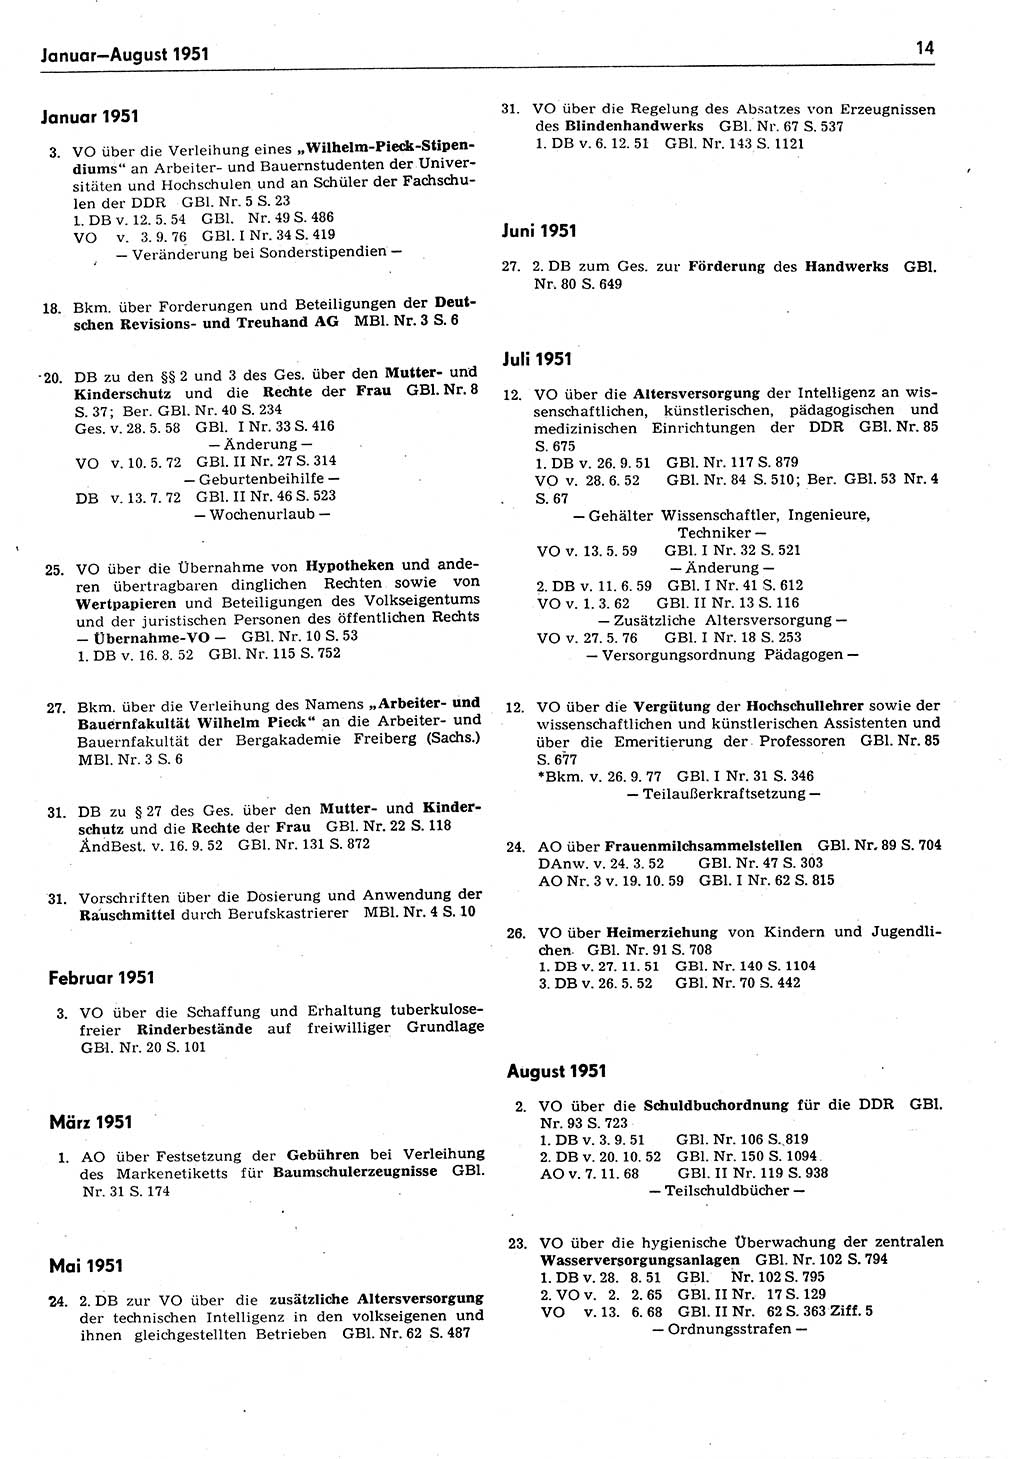 Das geltende Recht der Deutschen Demokratischen Republik (DDR) 1949-1988, Seite 14 (Gelt. R. DDR 1949-1988, S. 14)